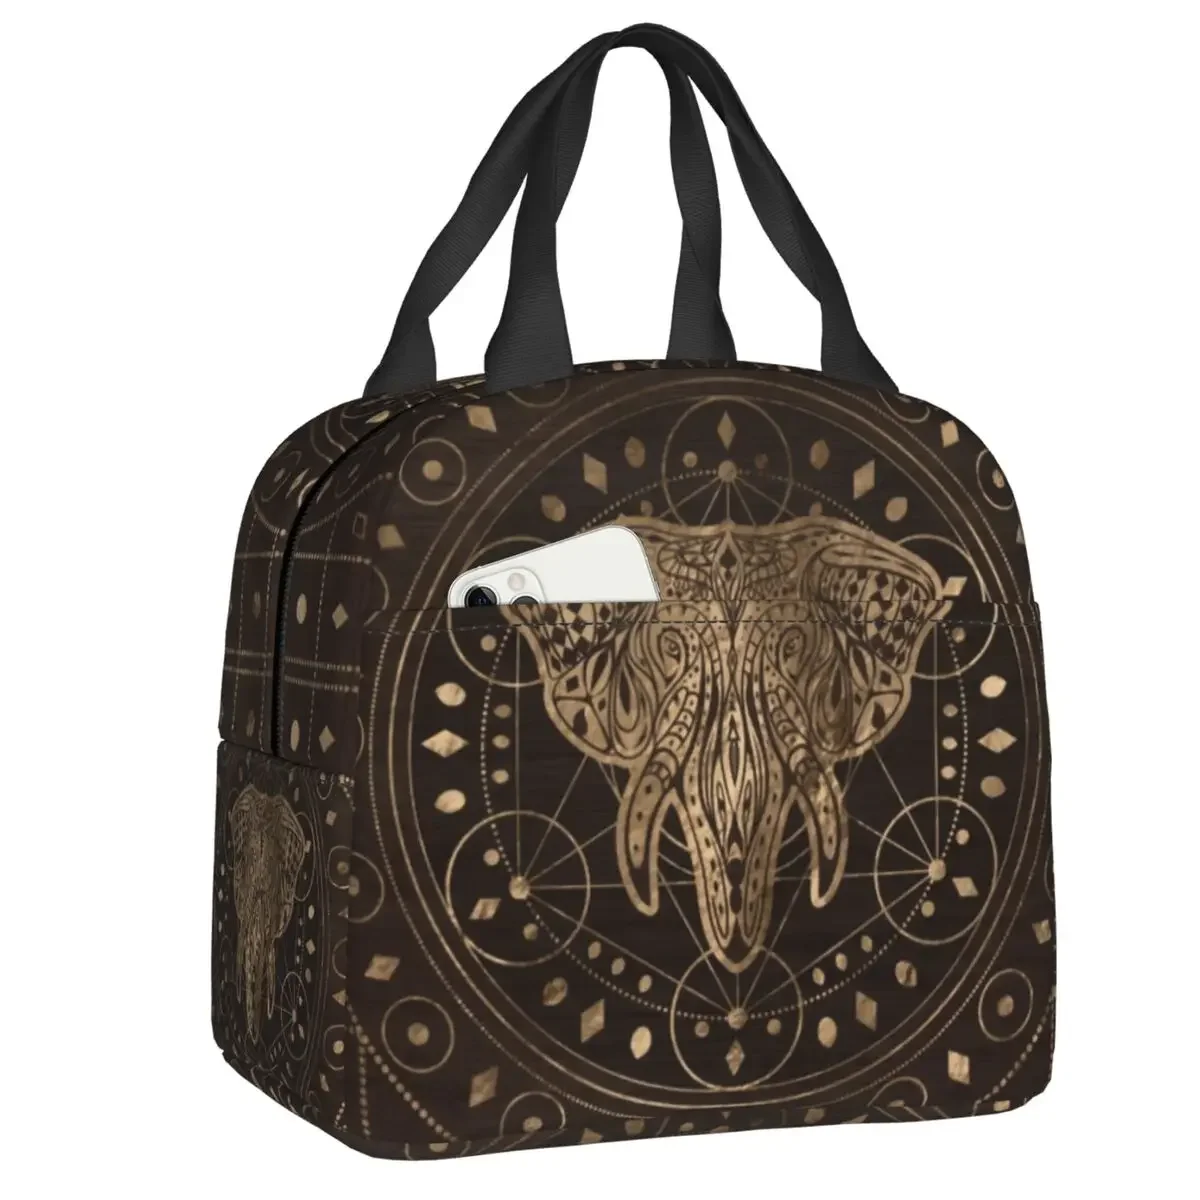 

Ланч-боксы с изображением слона на священном геометрическом орнаменте для женщин, термоизолированная сумка для обеда с животными, для офиса и работы